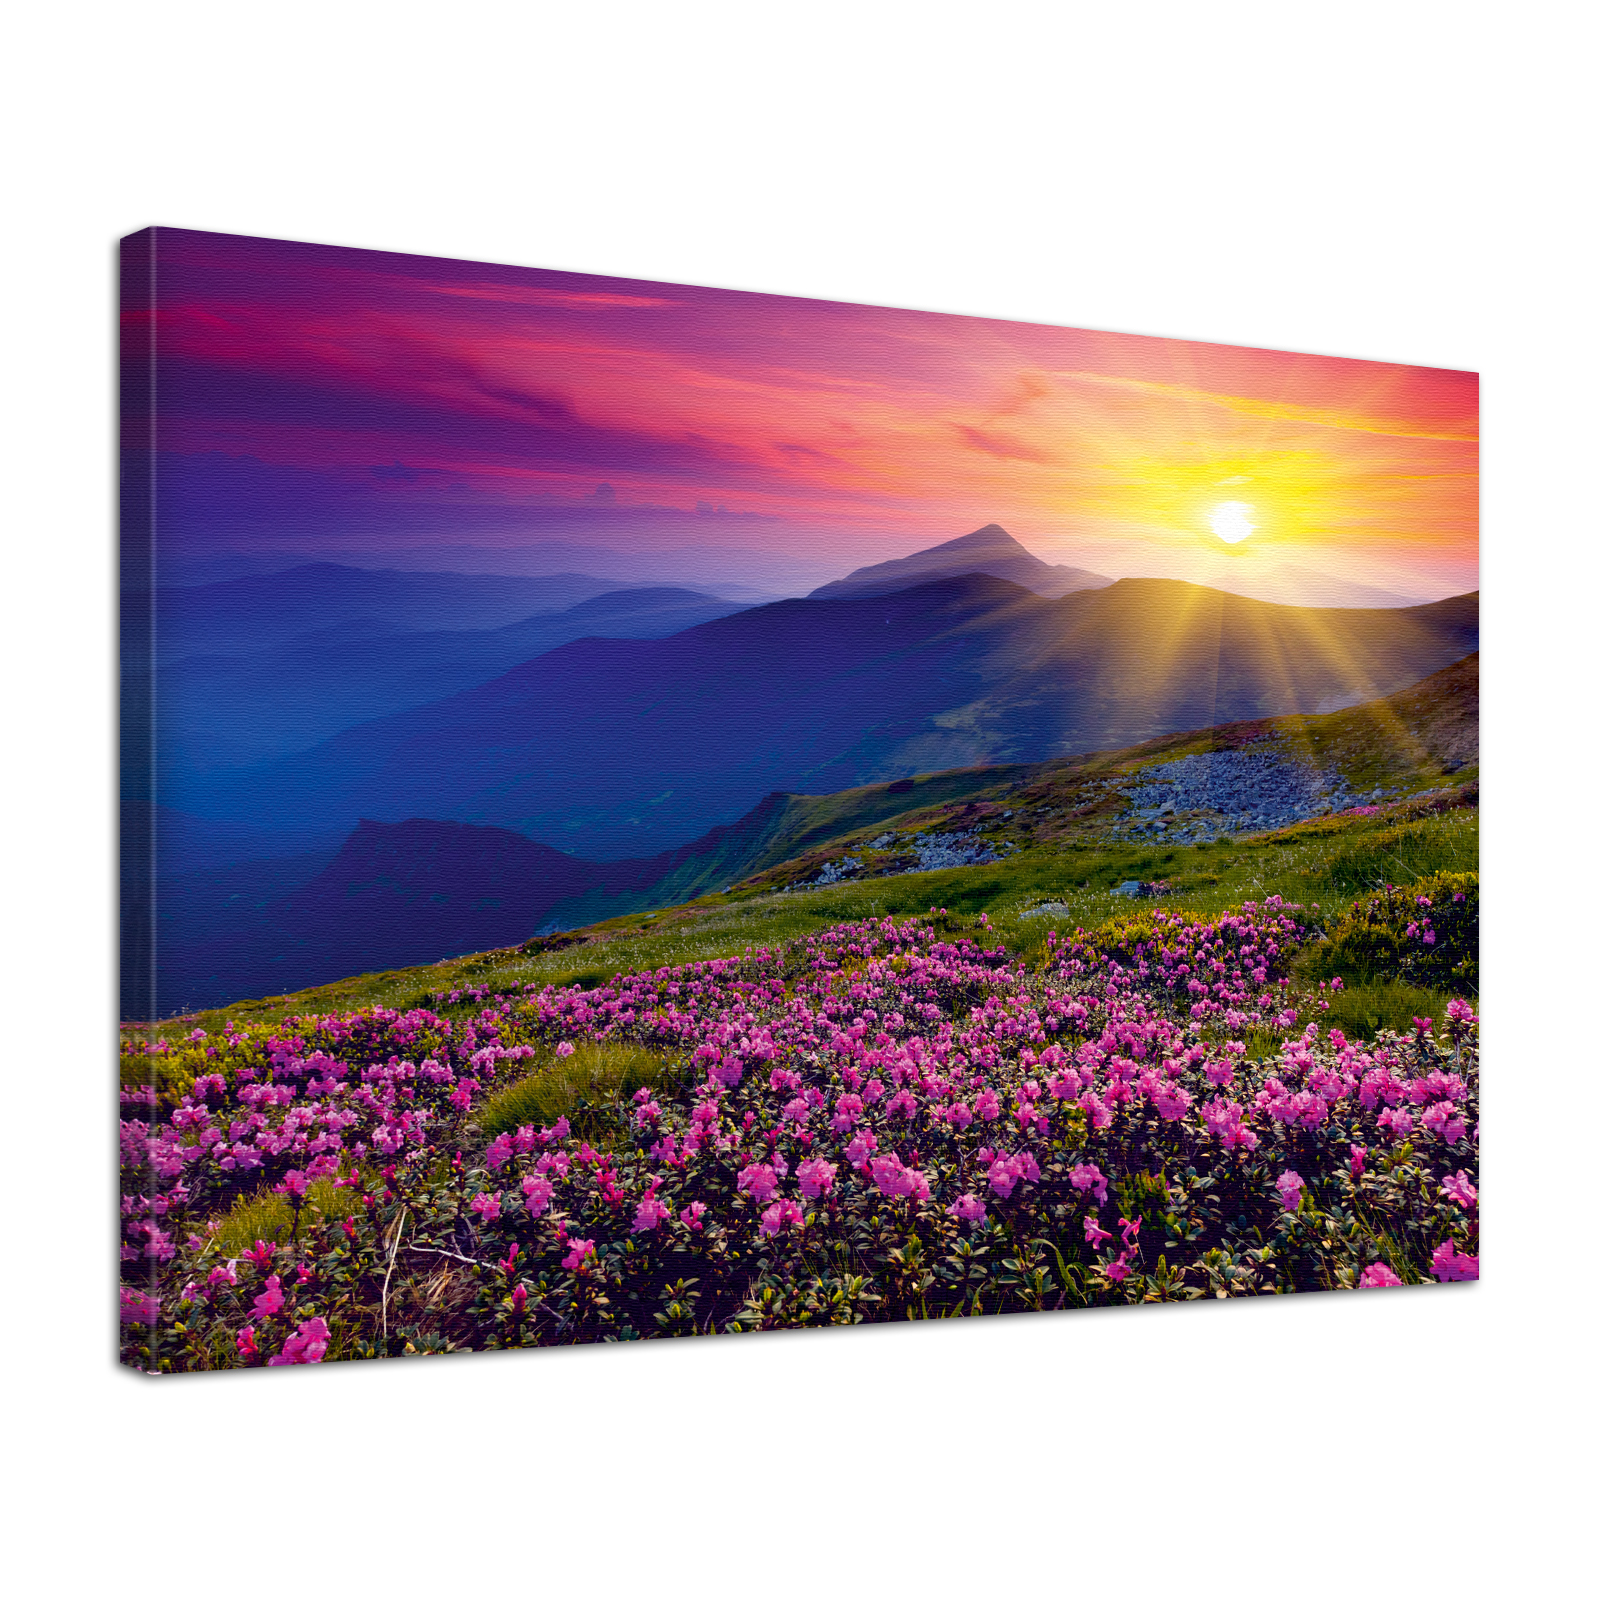 Leinwand Bild edel  Natur Sonnenaufgang in den Bergen in lila